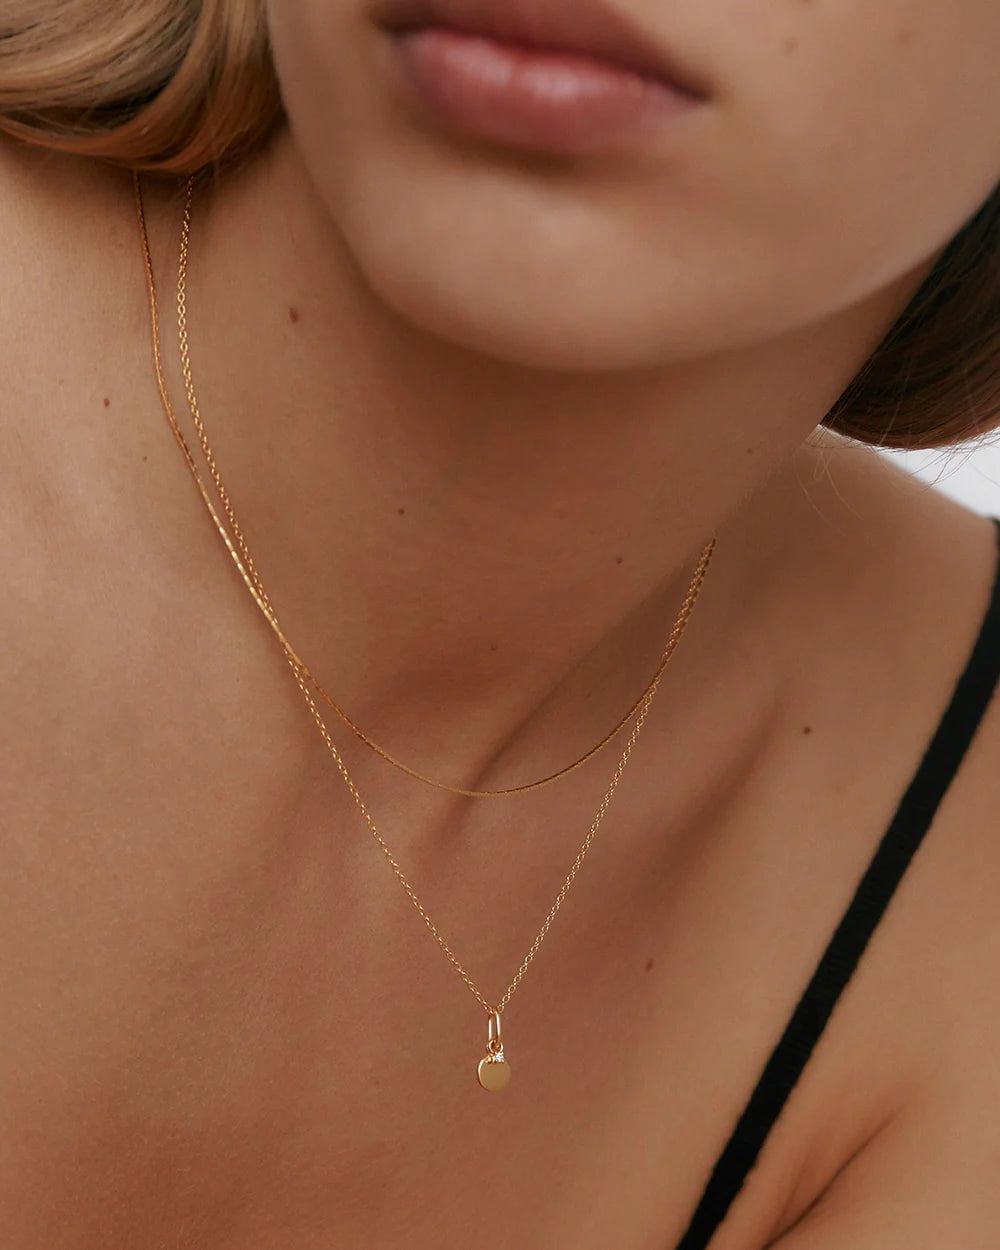 kirstin-ash-necklaces-honour-necklace-42707252216059